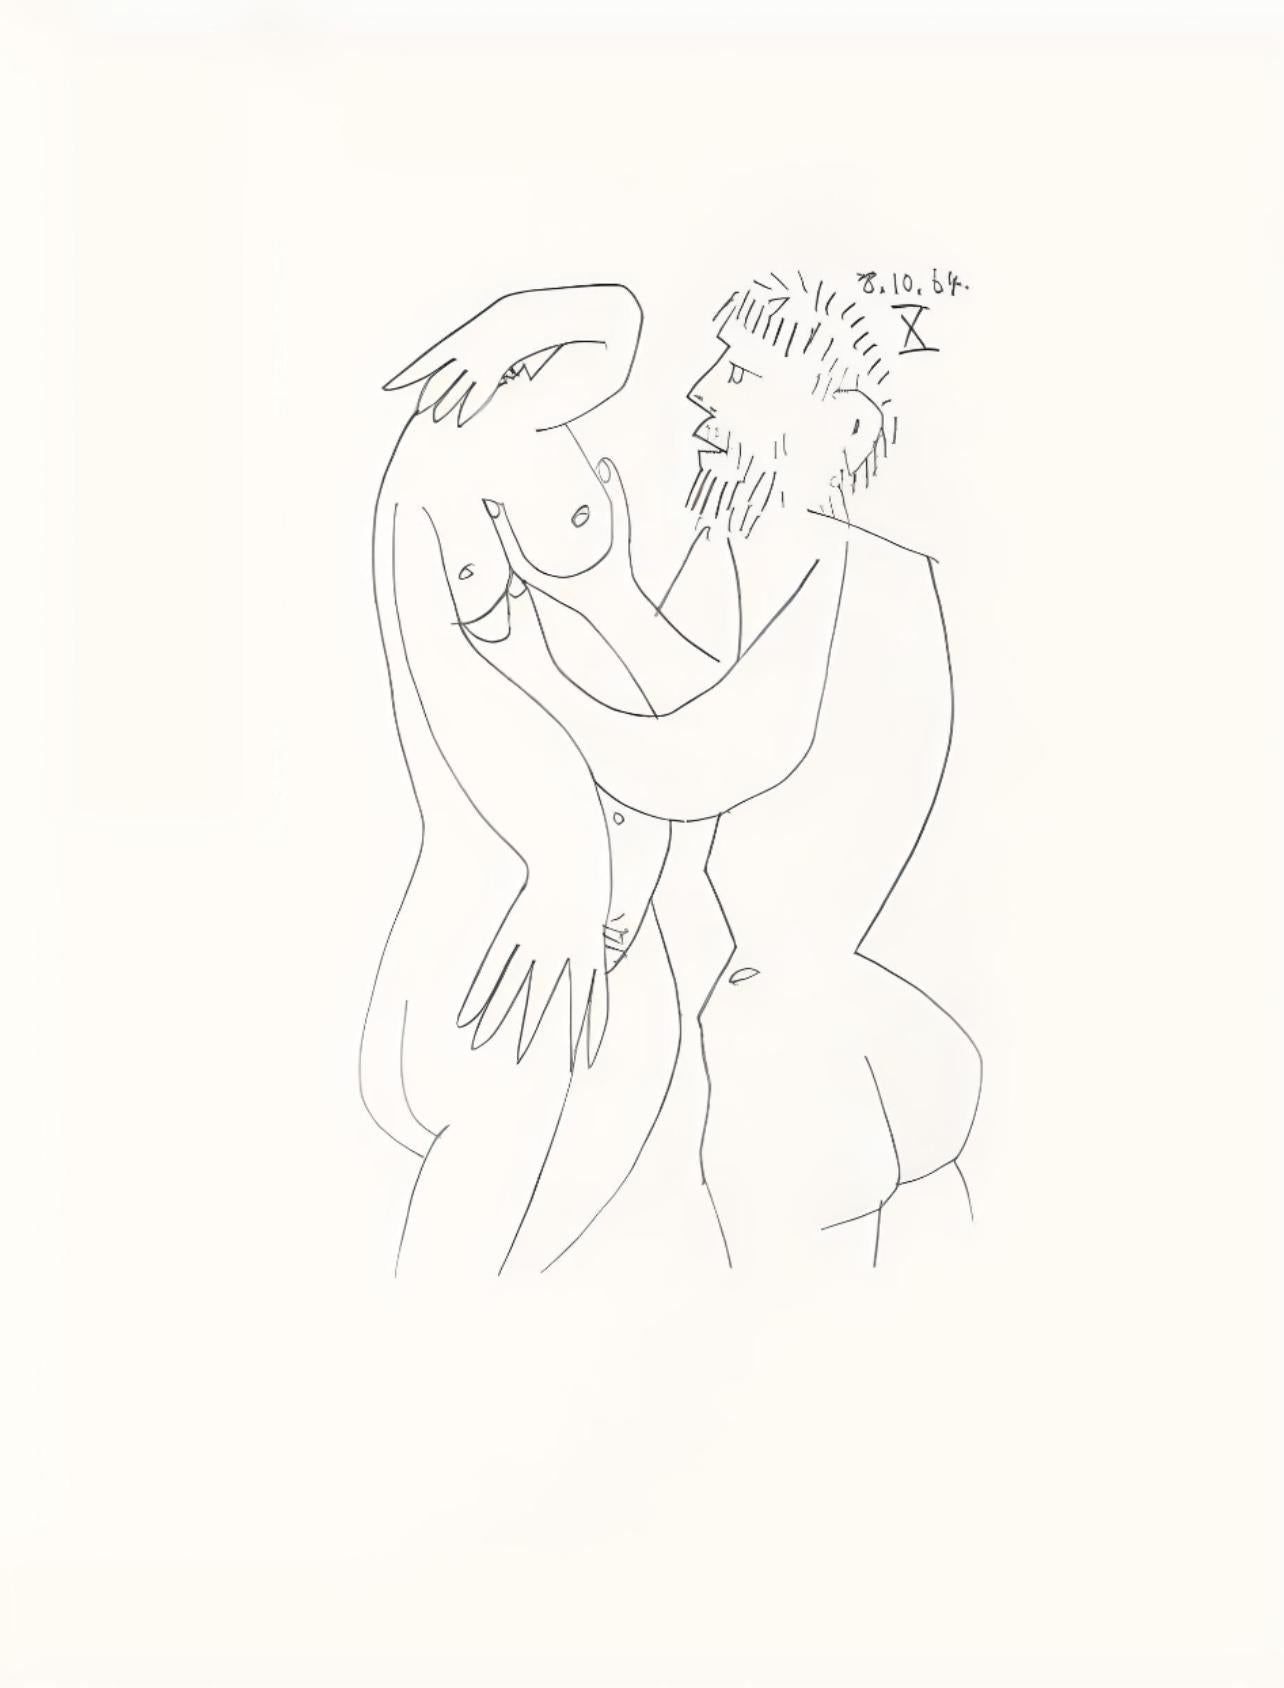 Picasso, Le Goût du Bonheur 59 (Cramer 148; Bloch 2013) (after) - Print by Pablo Picasso